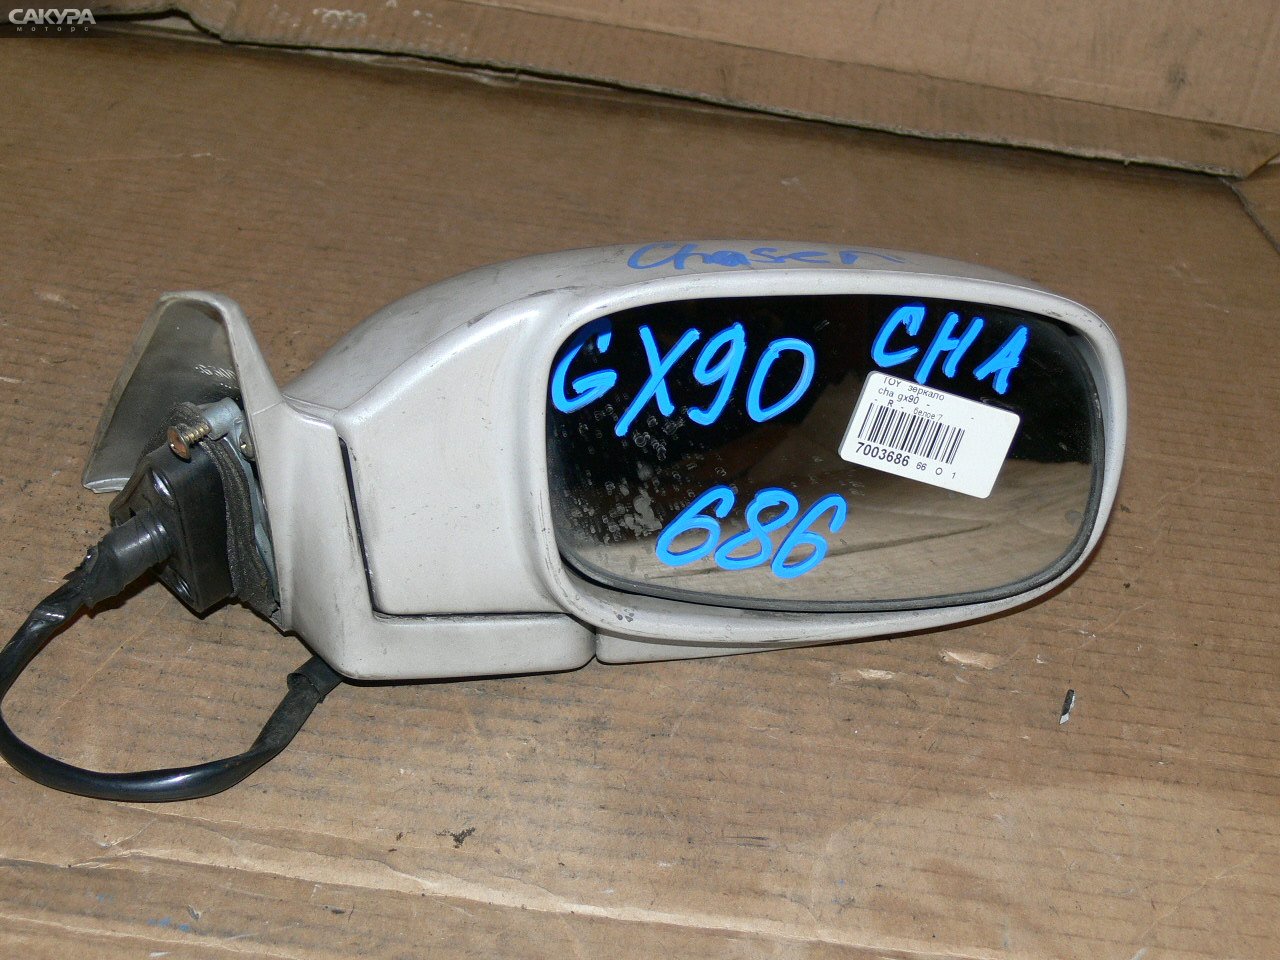 Зеркало боковое правое Toyota Chaser GX90: купить в Сакура Иркутск.